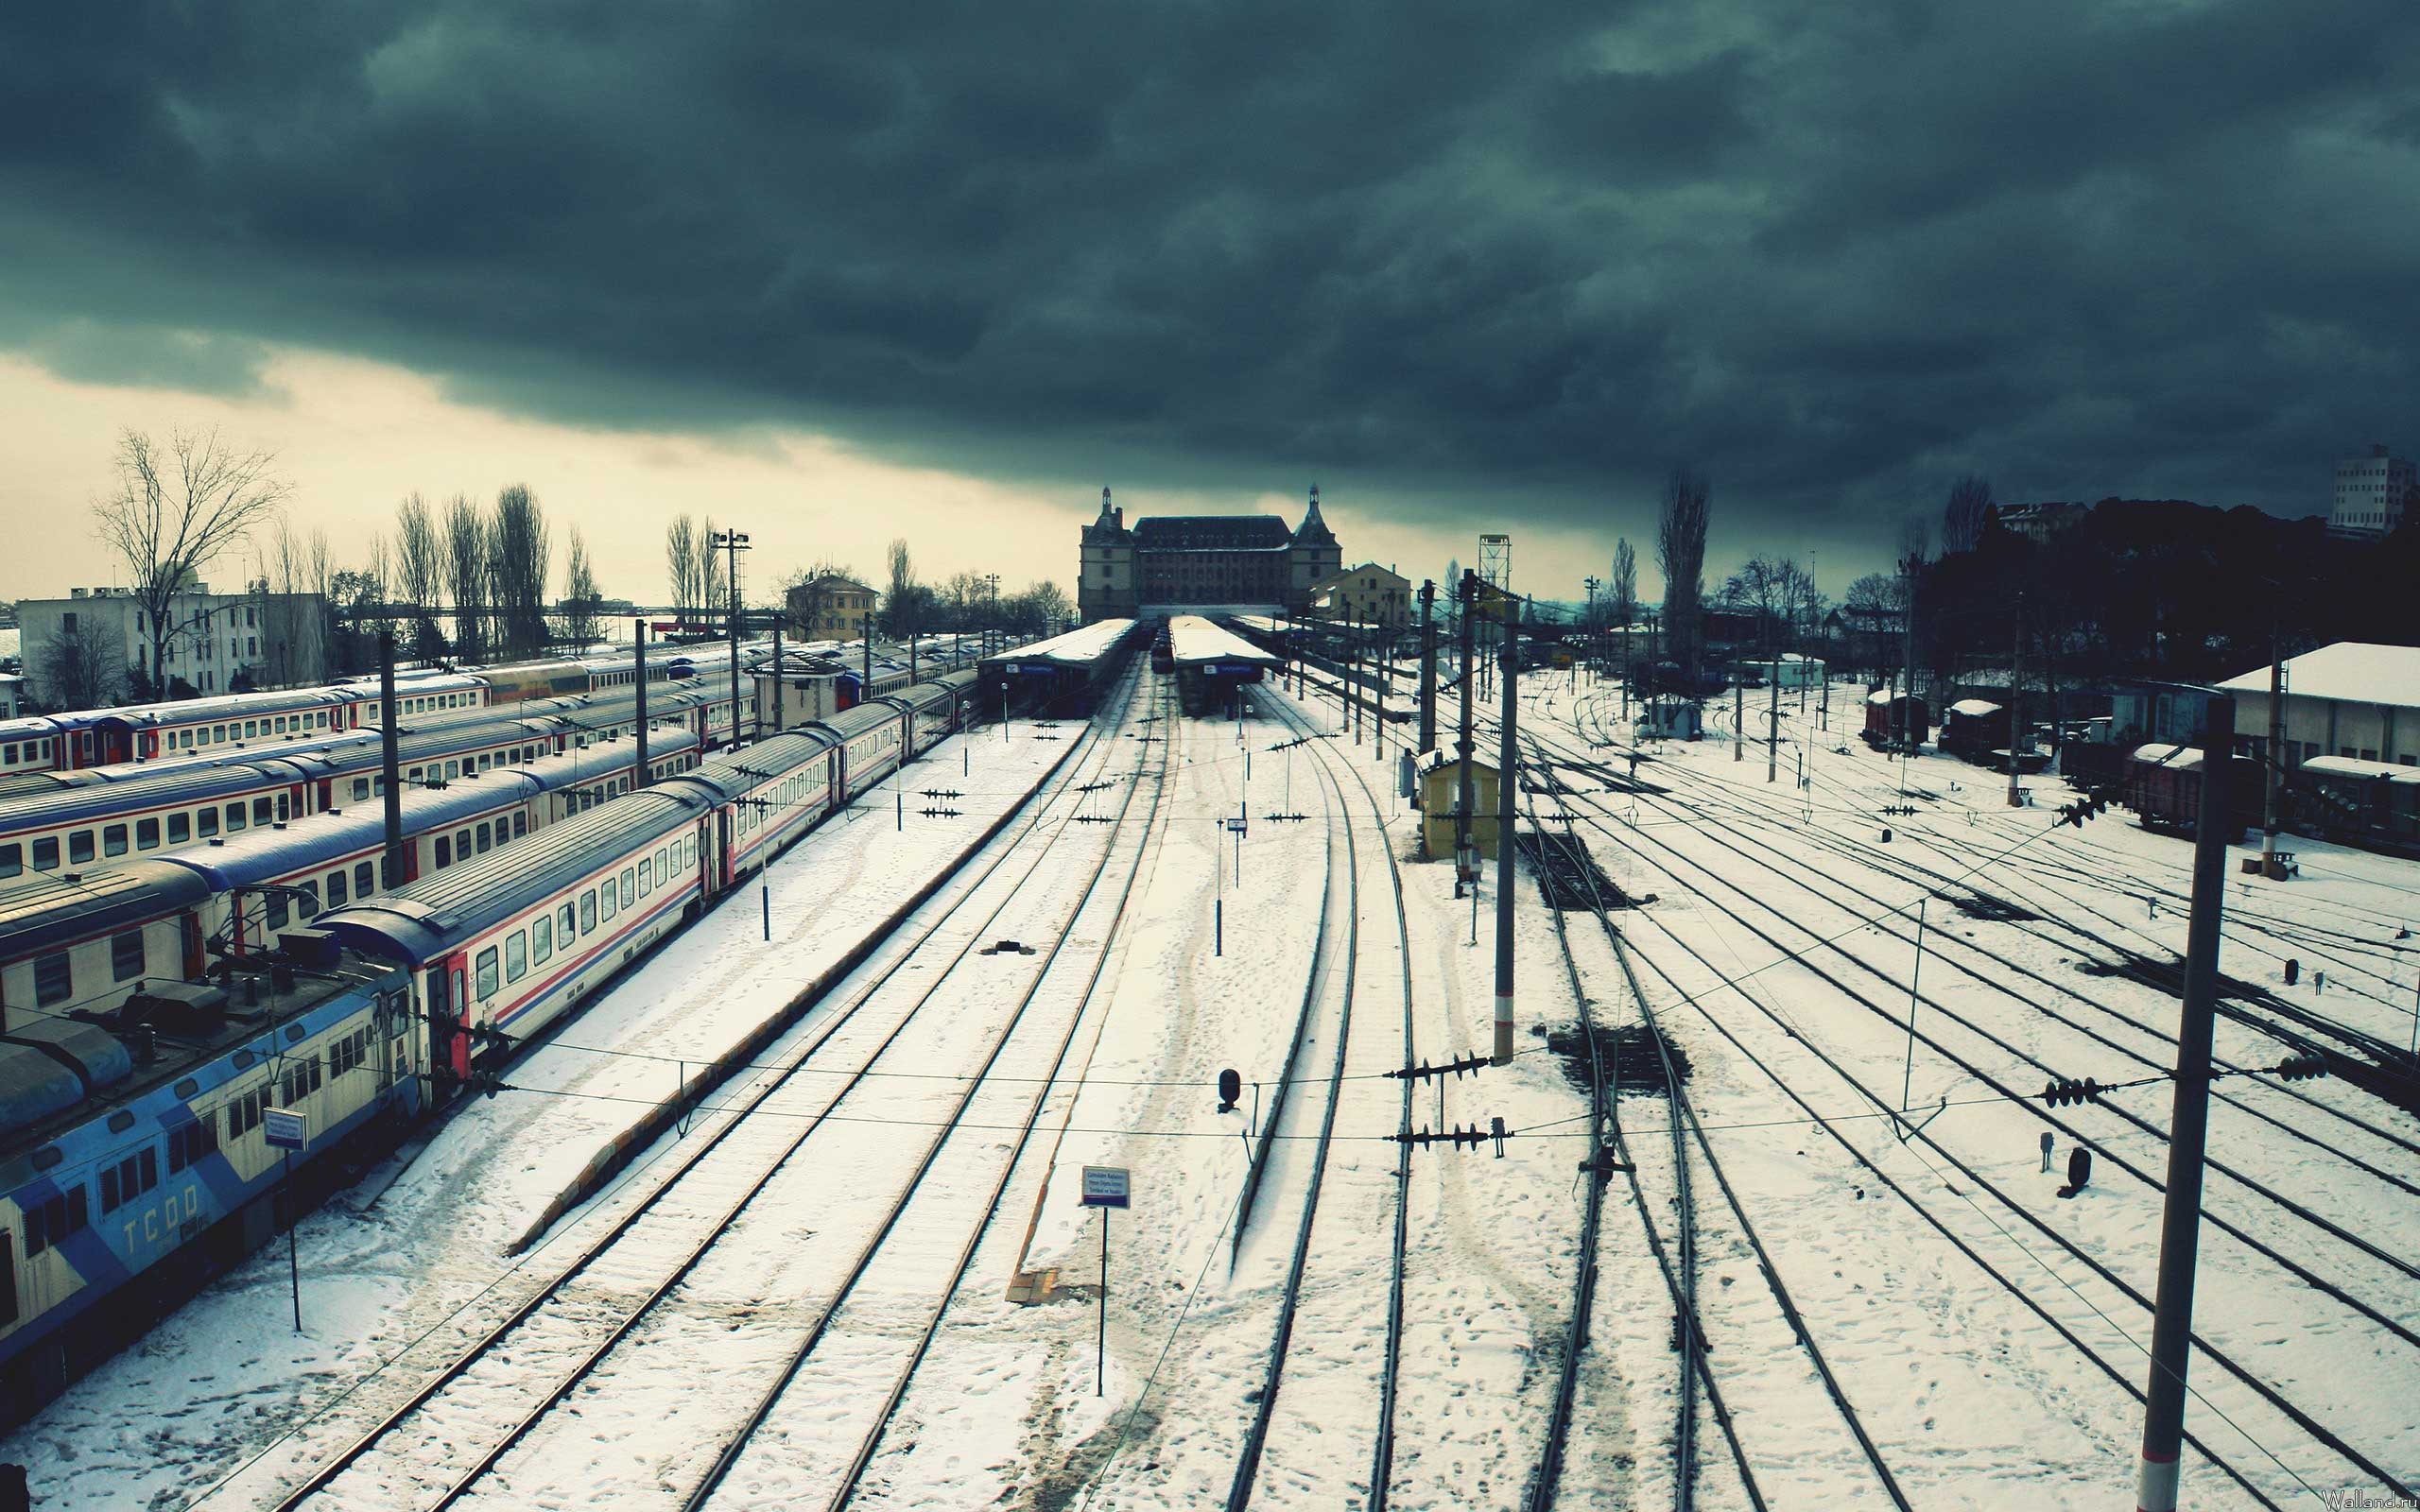 Fond d'ecran Gare voies ferrées sous la neige